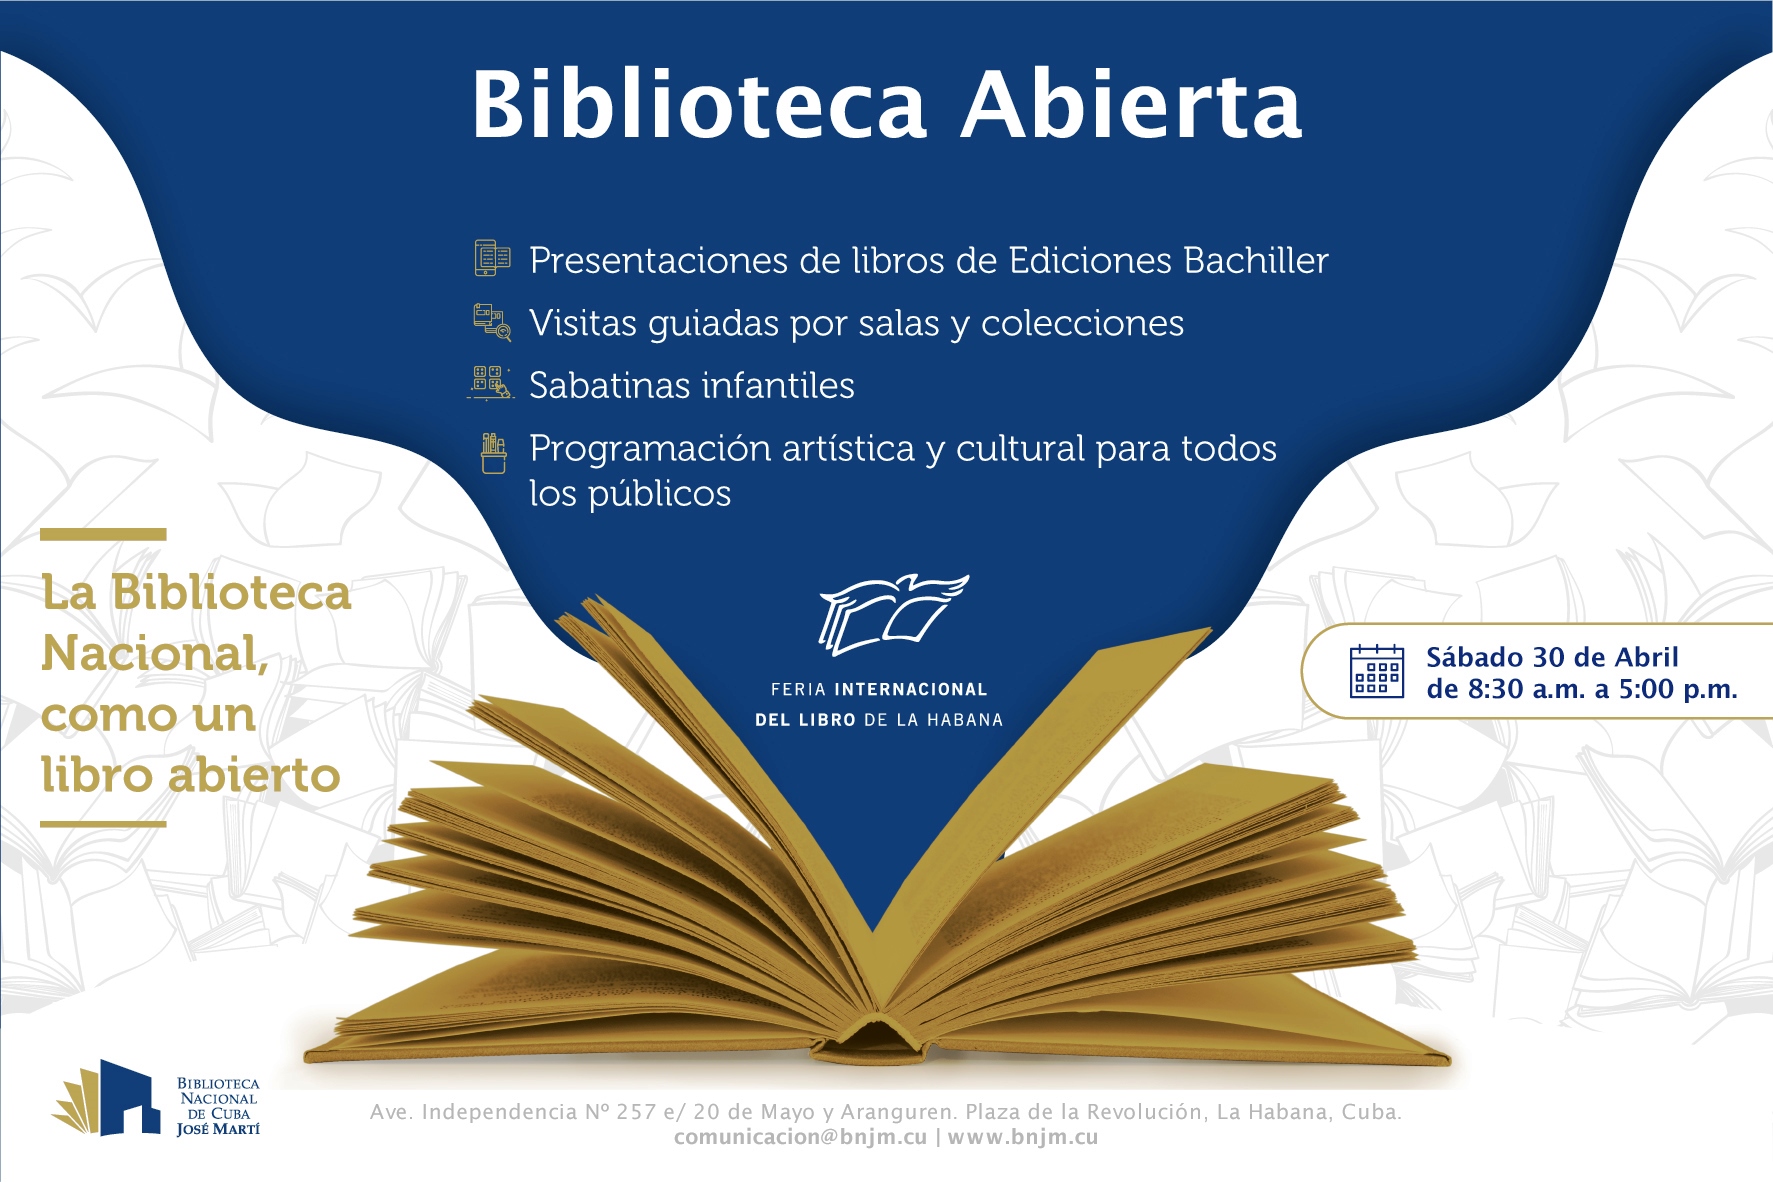 Foto de Biblioteca Abierta. Sábado 30 de abril, de 8:30 a.m. a 5:00 p.m. La Biblioteca Nacional, como un libro abierto